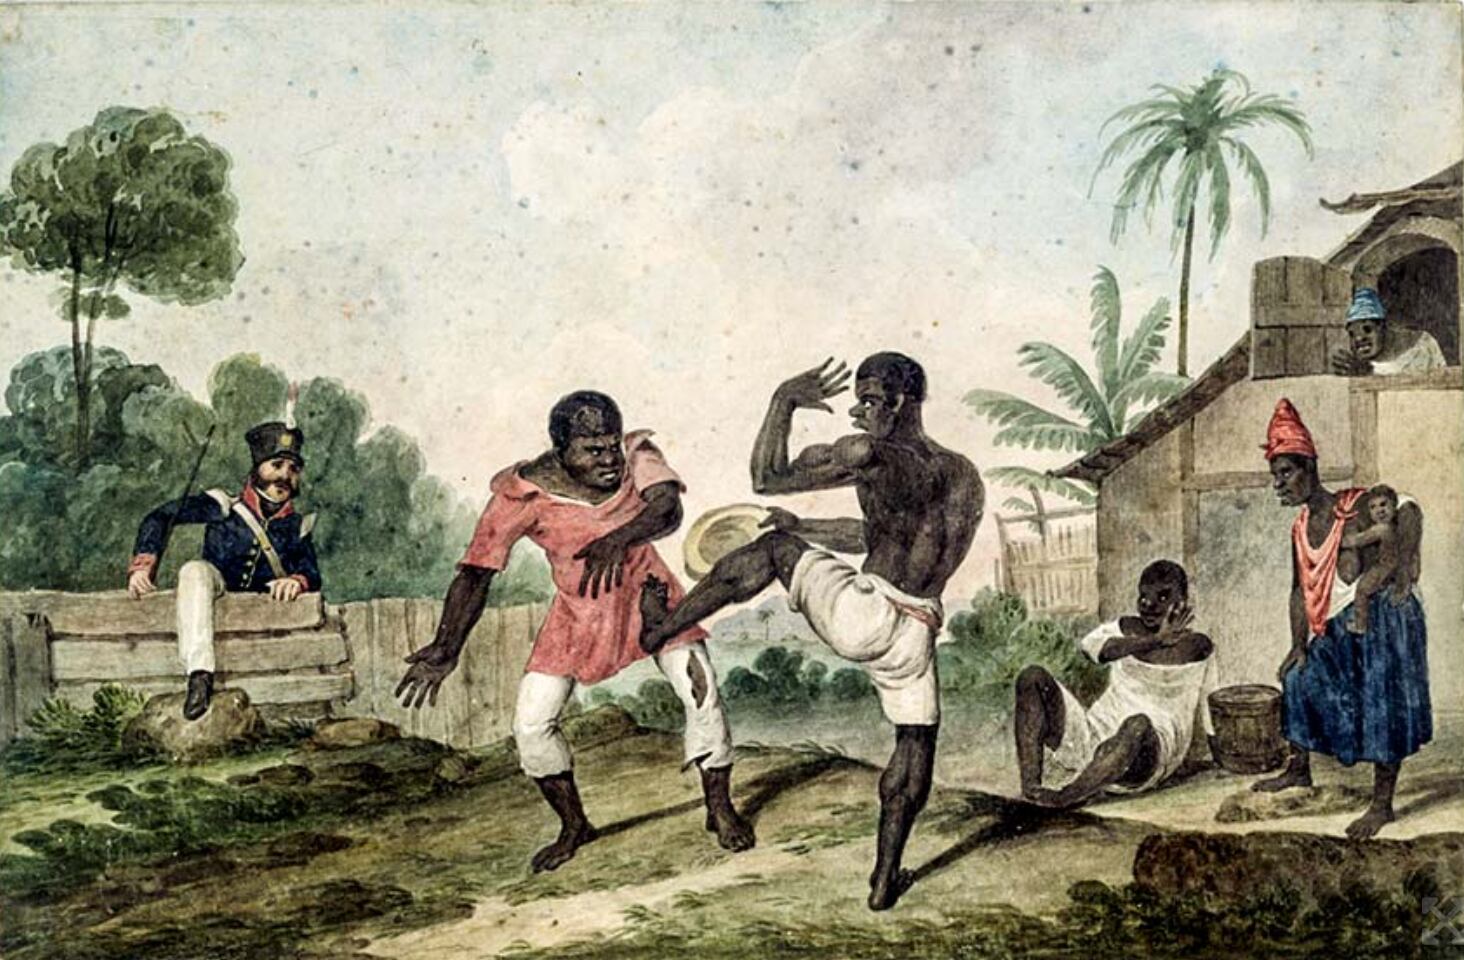 Pintura retrata escravos sendo perseguidos pelas autoridades.